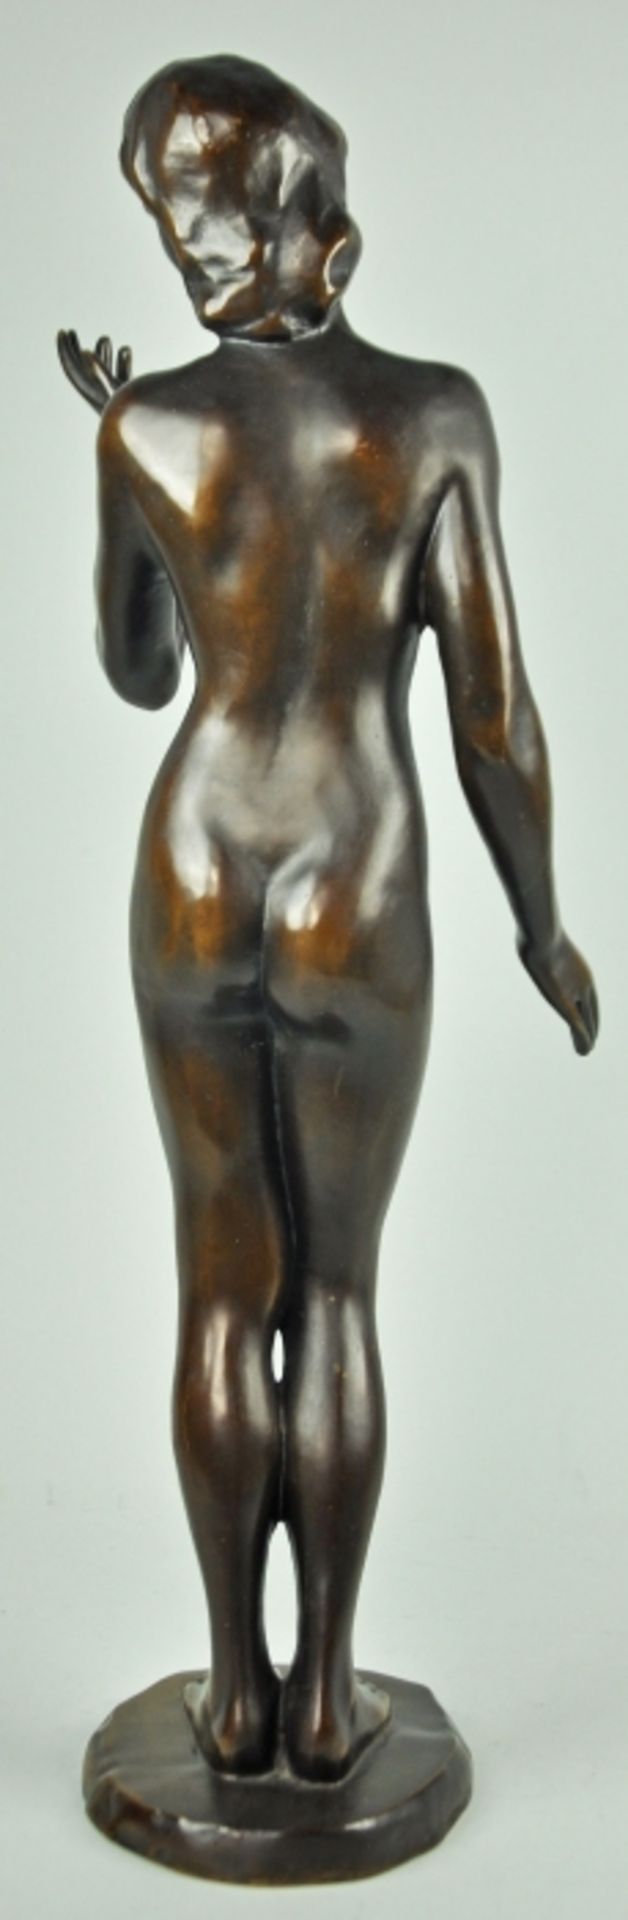 BRONZESKULPTUR "Weiblicher Akt" in aufrechtstehender Pose, braun patinierte Bronze, auf runder - Image 2 of 2